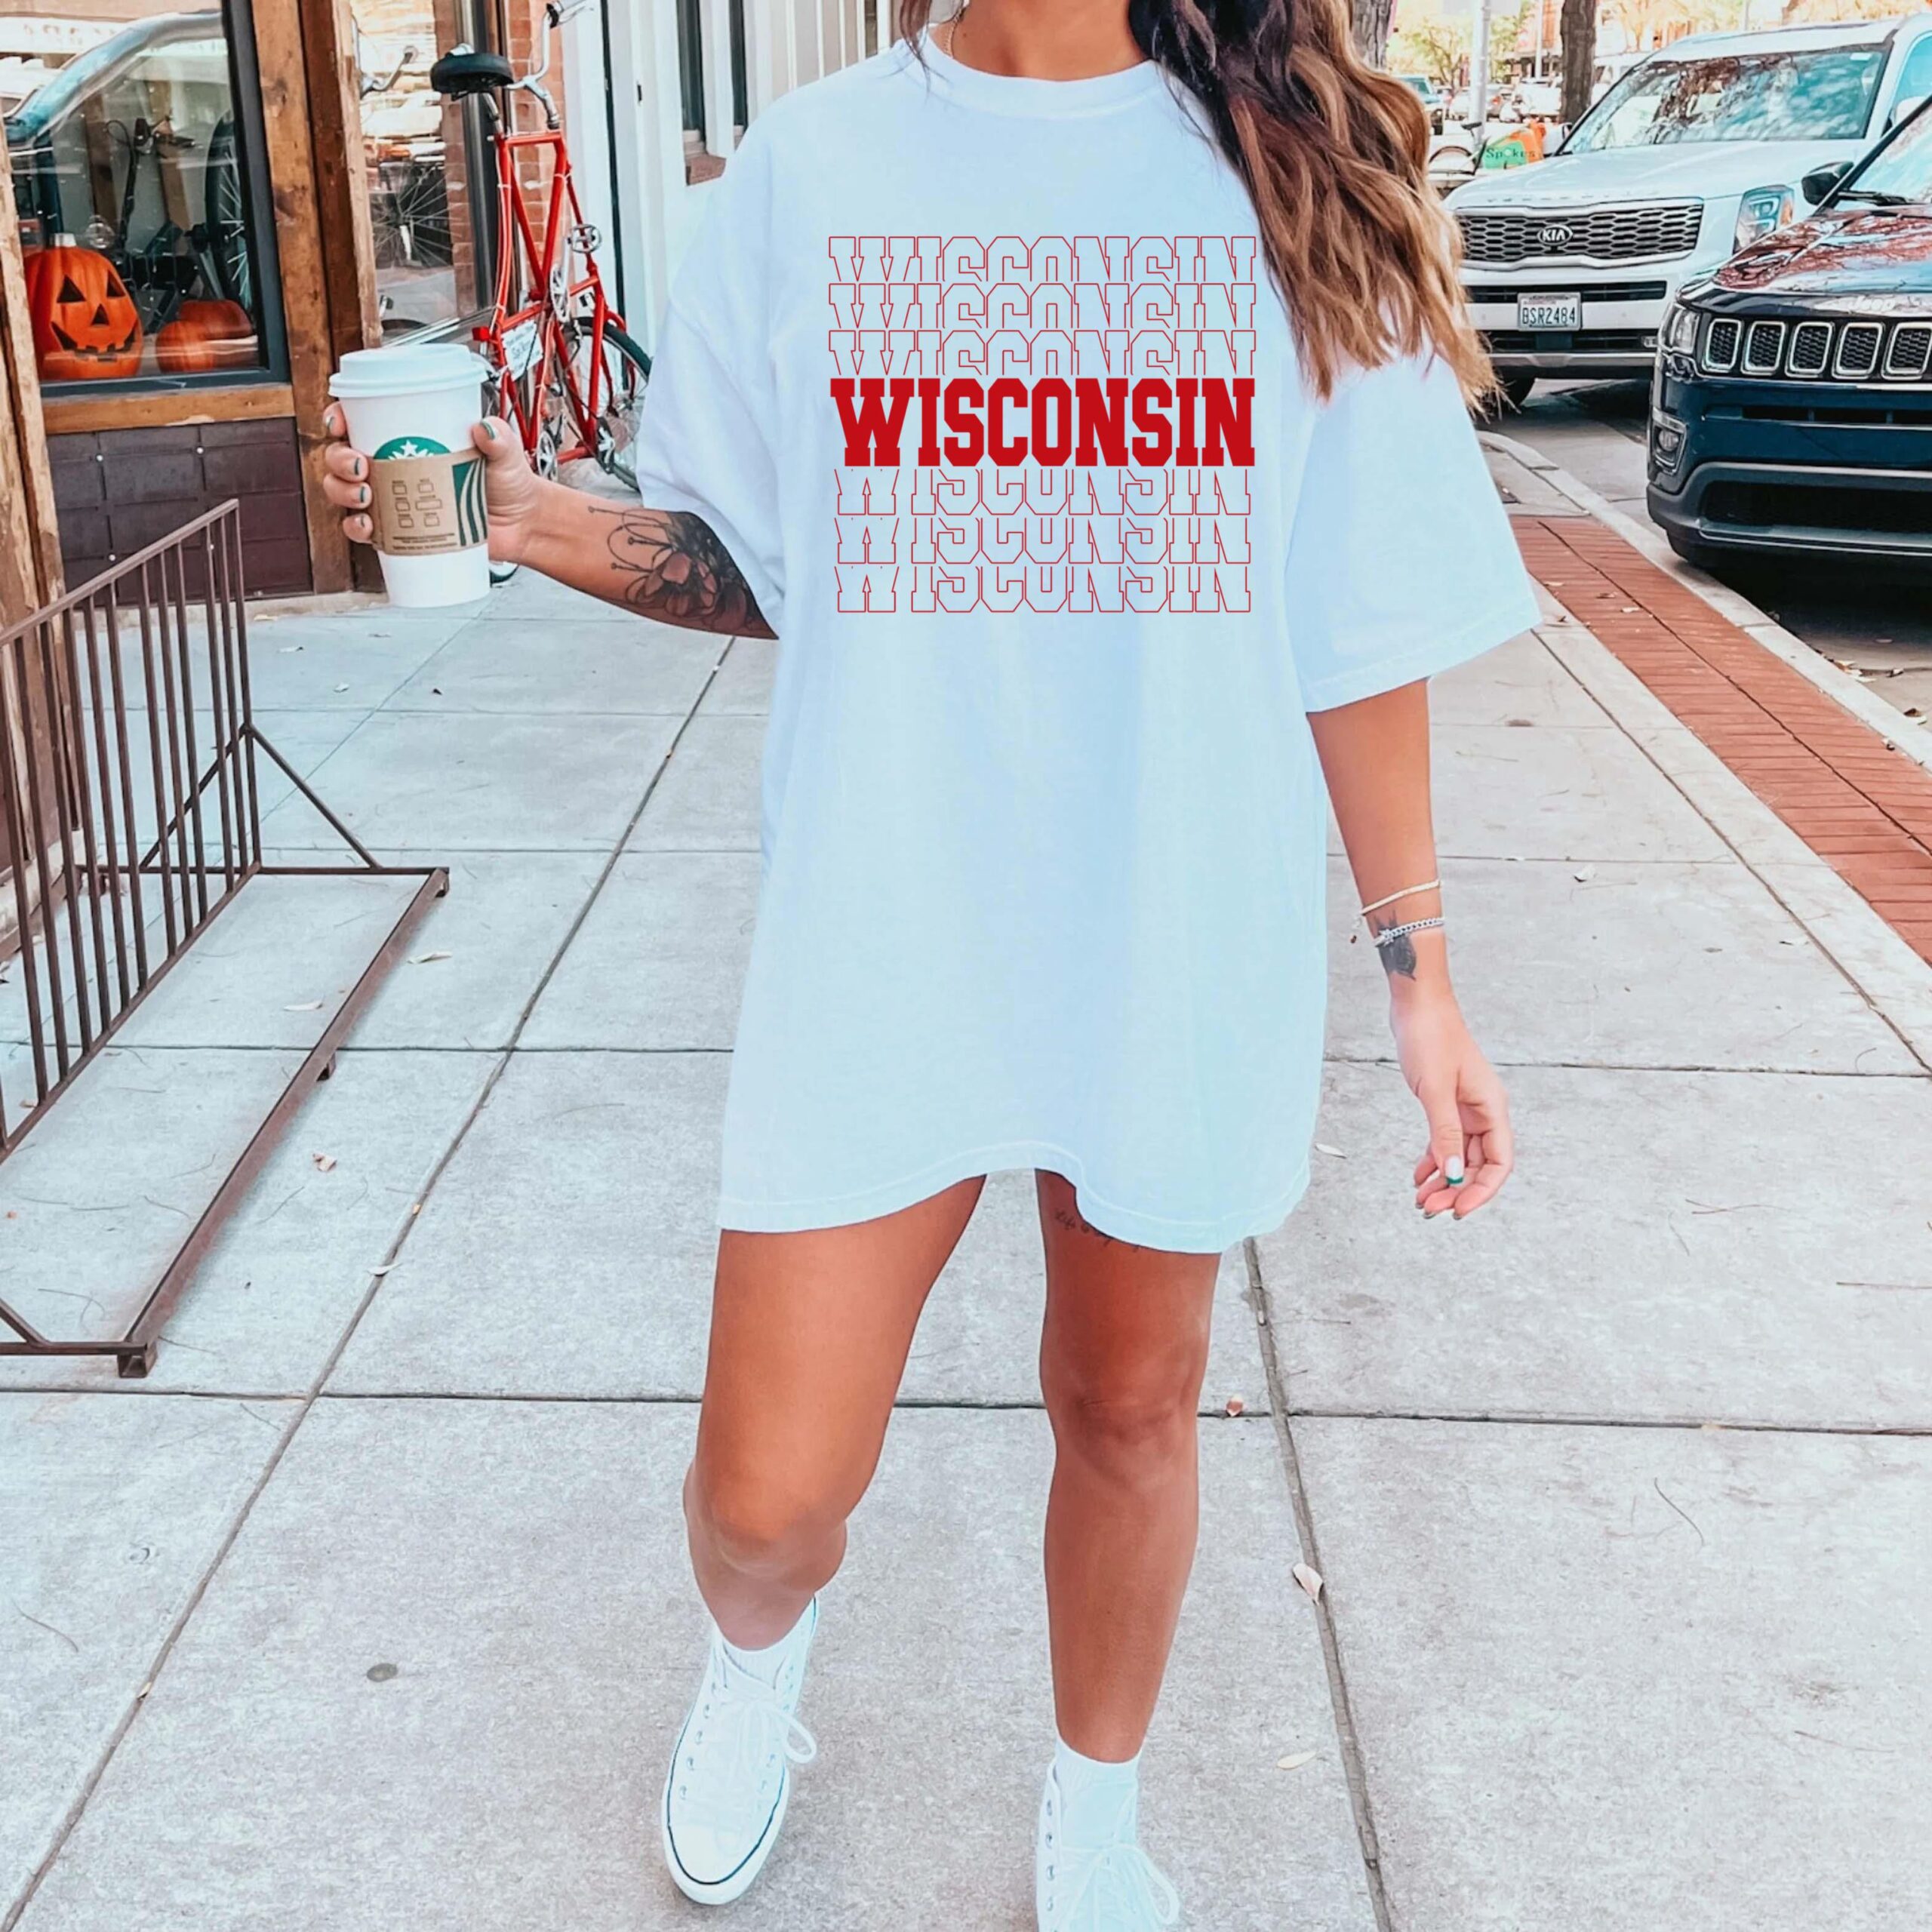 Wisconsin Sweatshirt, Wisconsin Hoodie, Wisconsin State Sweatshirt, Wisconsin T-Shirt, Wisconsin Shirt, College Sweatshirt, Wisconsin Gift